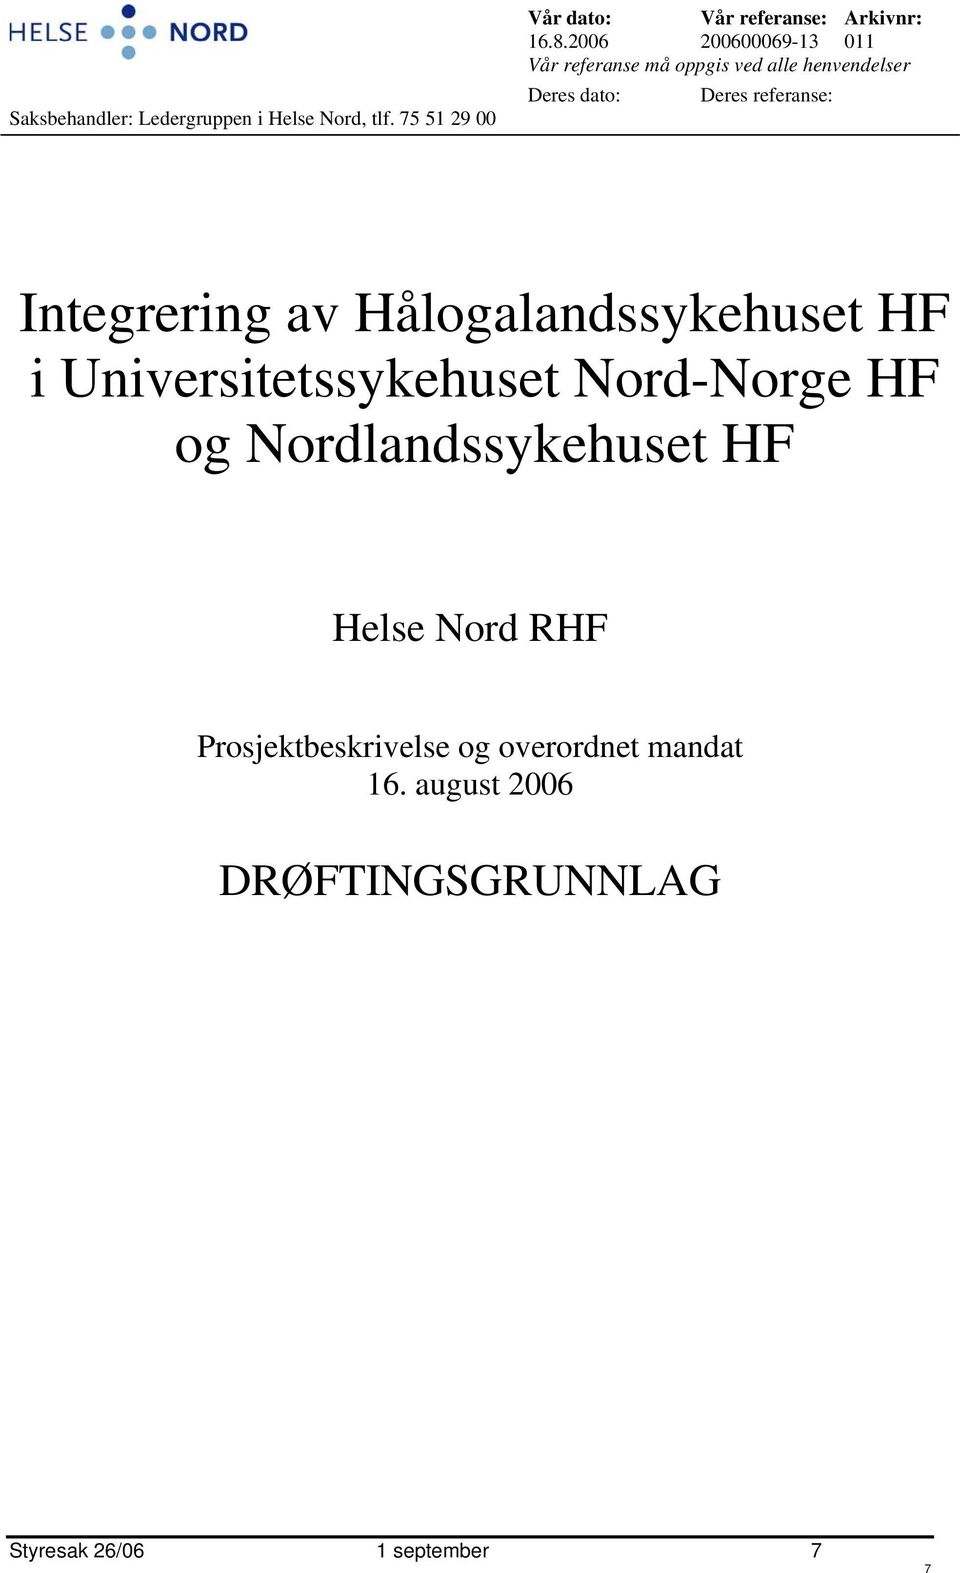 Integrering av Hålogalandssykehuset HF i Universitetssykehuset Nord-Norge HF og Nordlandssykehuset HF